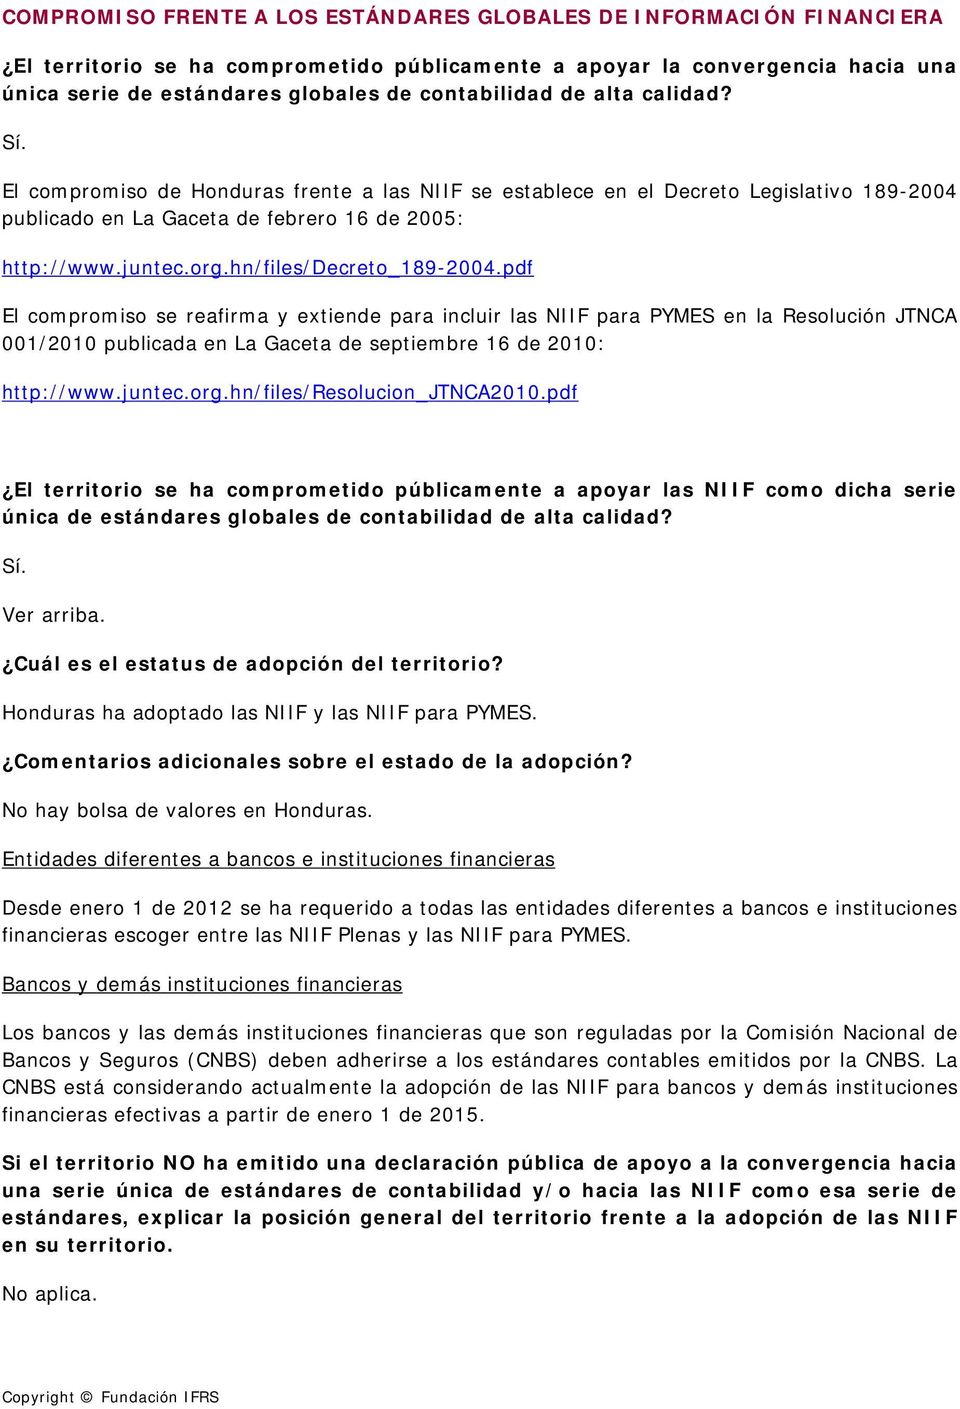 hn/files/decreto_189-2004.pdf El compromiso se reafirma y extiende para incluir las NIIF para PYMES en la Resolución JTNCA 001/2010 publicada en La Gaceta de septiembre 16 de 2010: http://www.juntec.